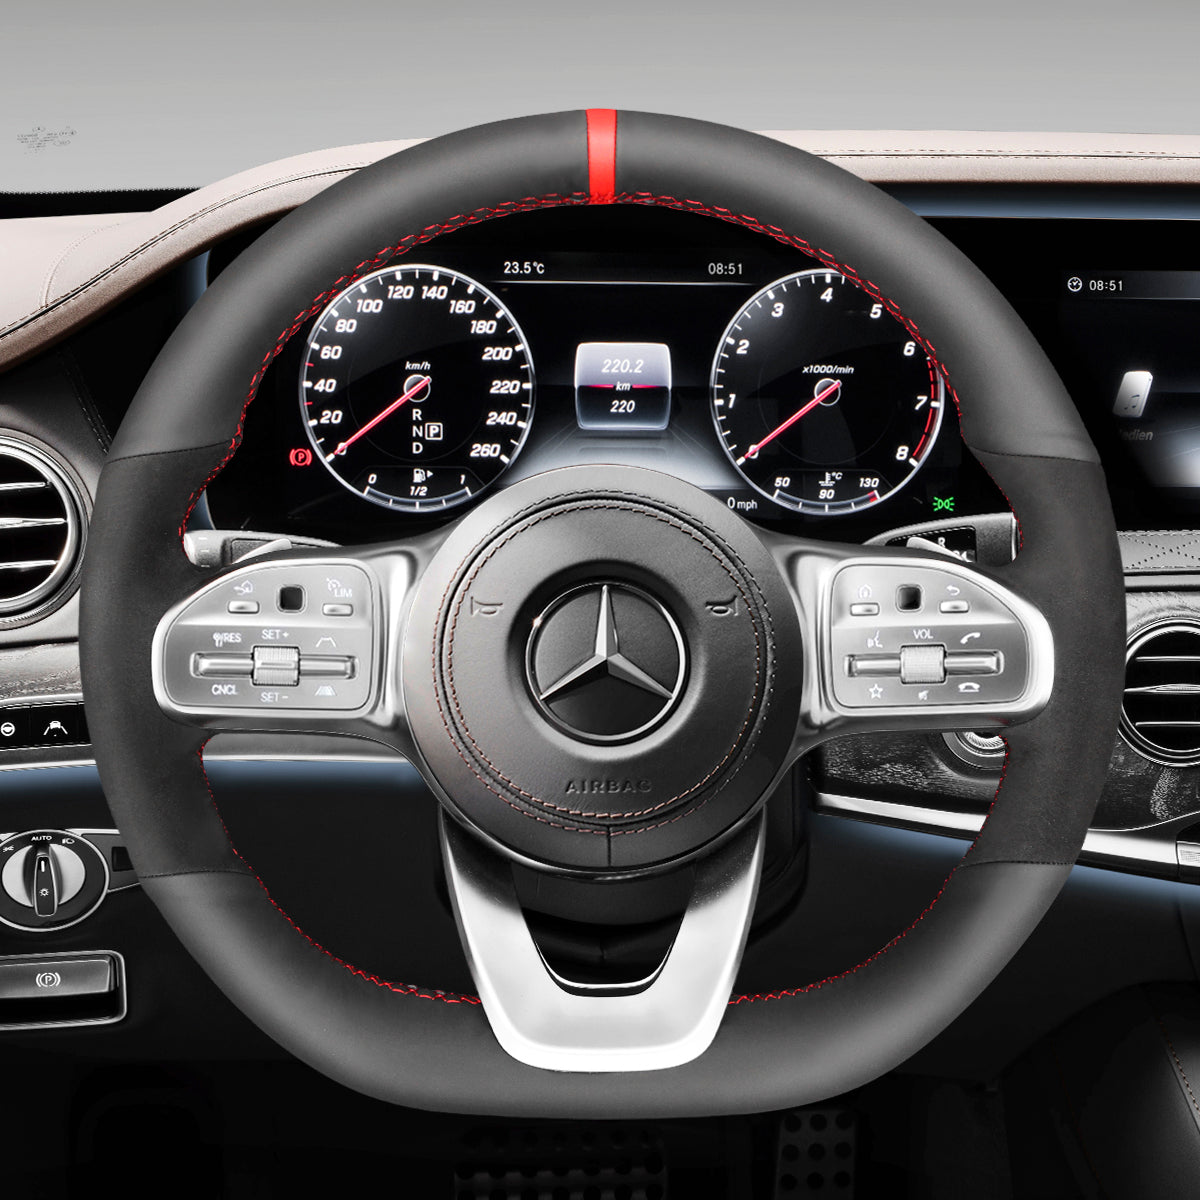 MEWANT Hand Stitch Black Leather Suede Car Steering Wheel Cover for Mercedes Benz W177 W205 C118 C257 W213 W463 H247 X247 W167 W222